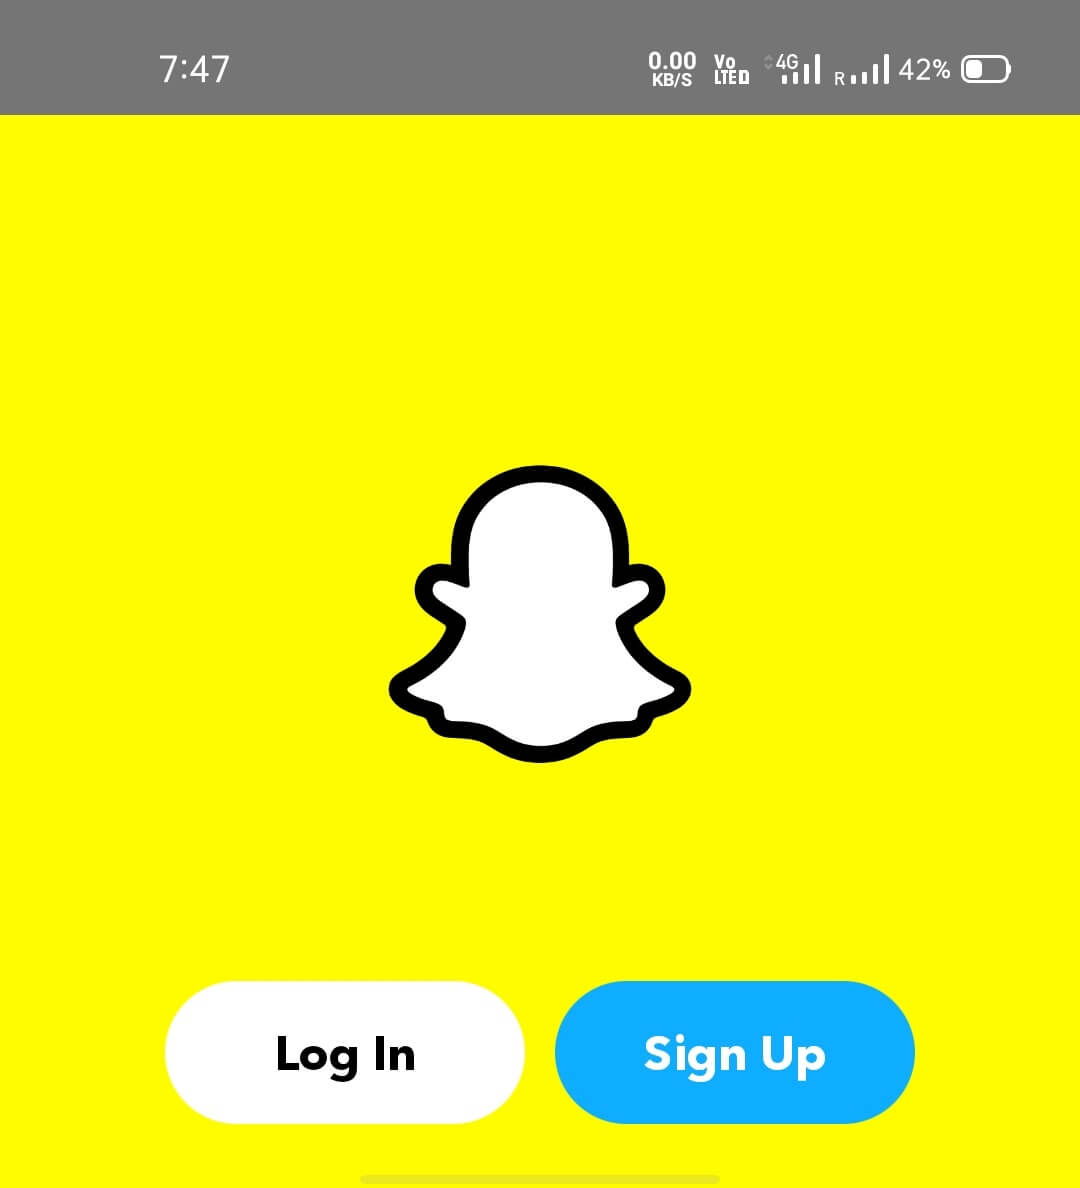 Zdaj odprite aplikacijo za klon Snapchat in dokončajte postopek prijave ali prijave